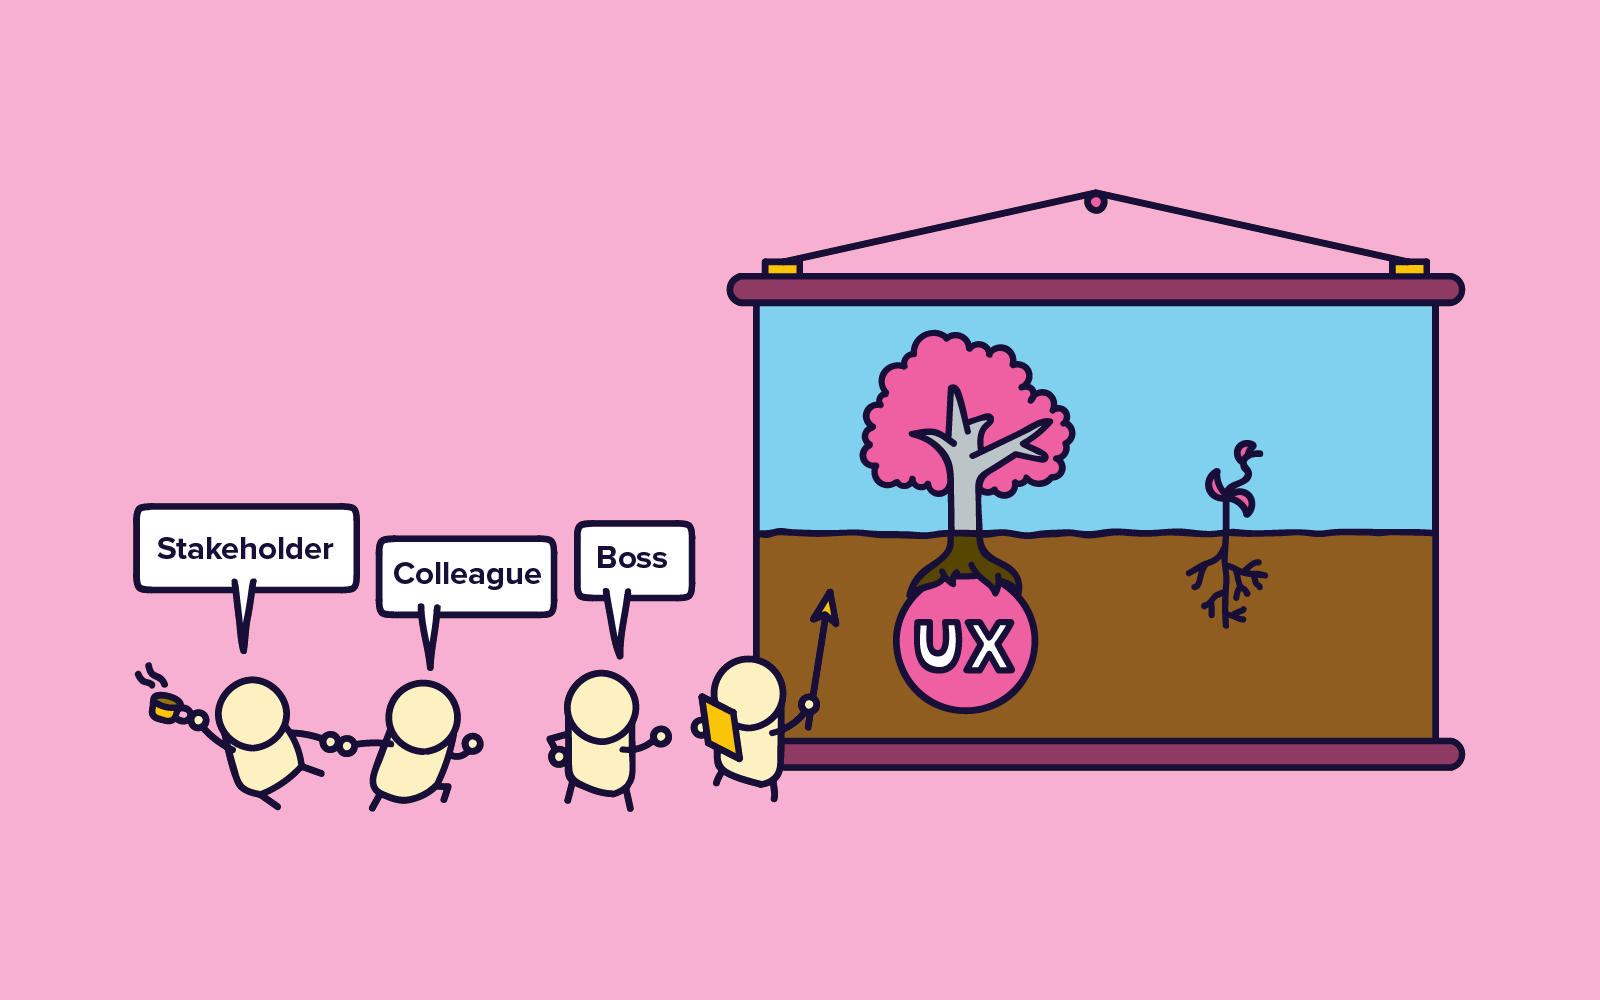 Як продавати дослідження UX?